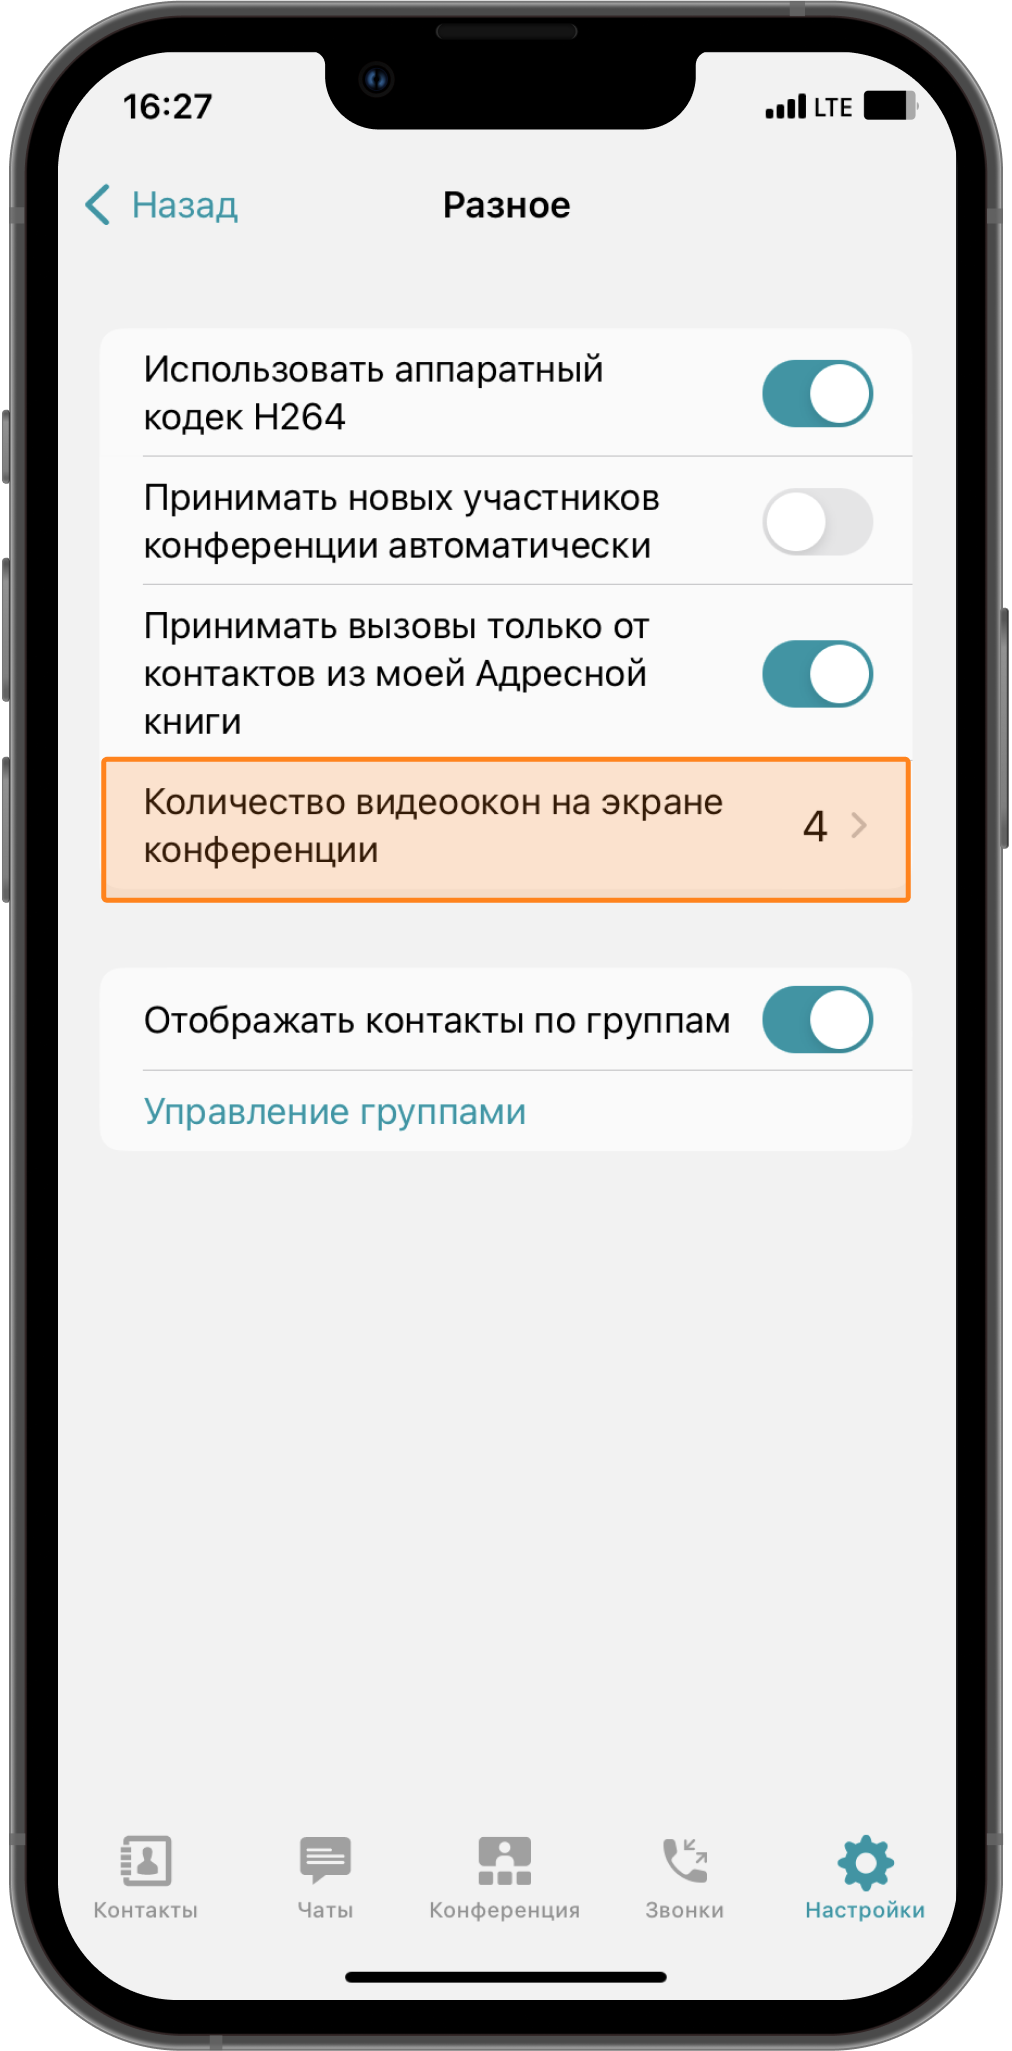 TrueConf 3.4.3 для iOS: Удобный запуск номеронабирателя, индикация выключенного микрофона и обновленное меню «Настройки» 8